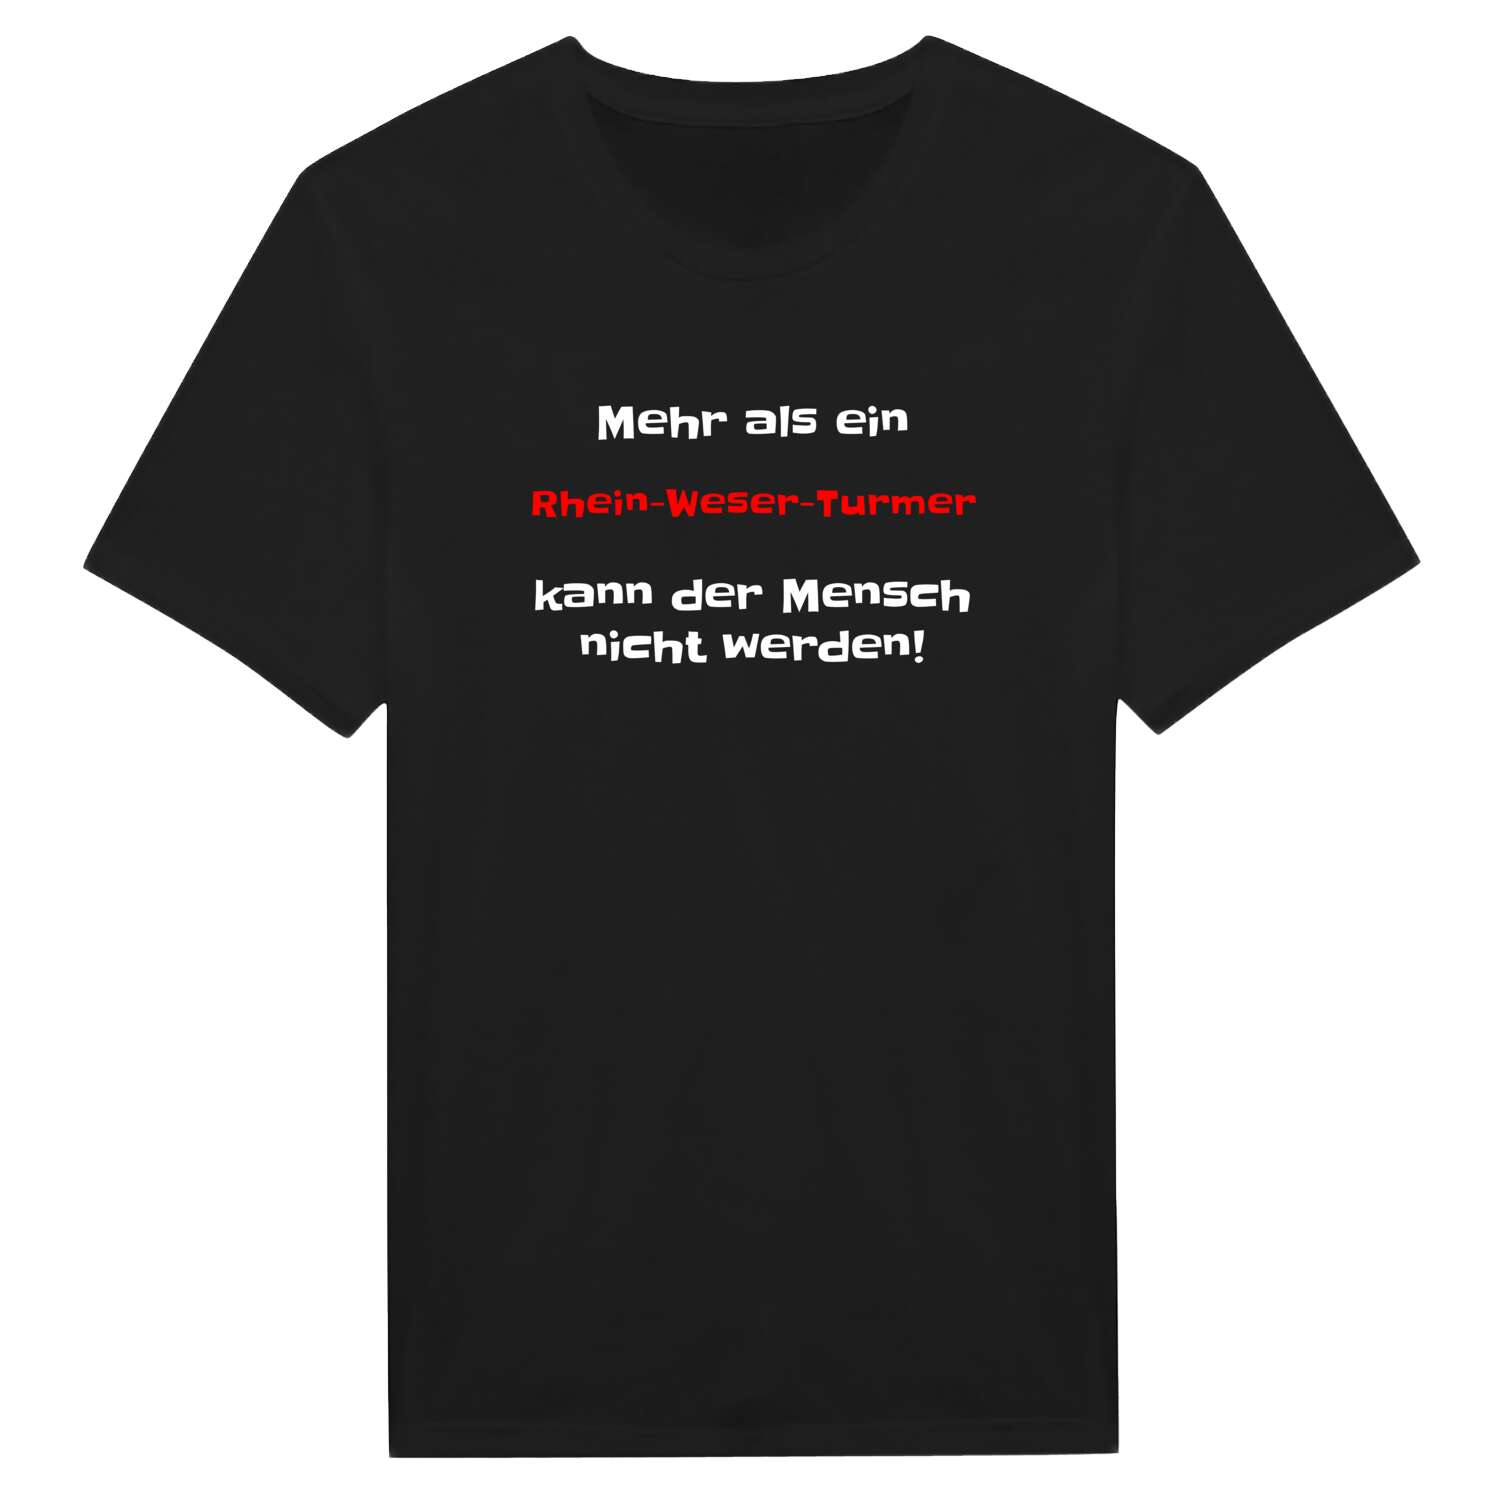 Rhein-Weser-Turm T-Shirt »Mehr als ein«